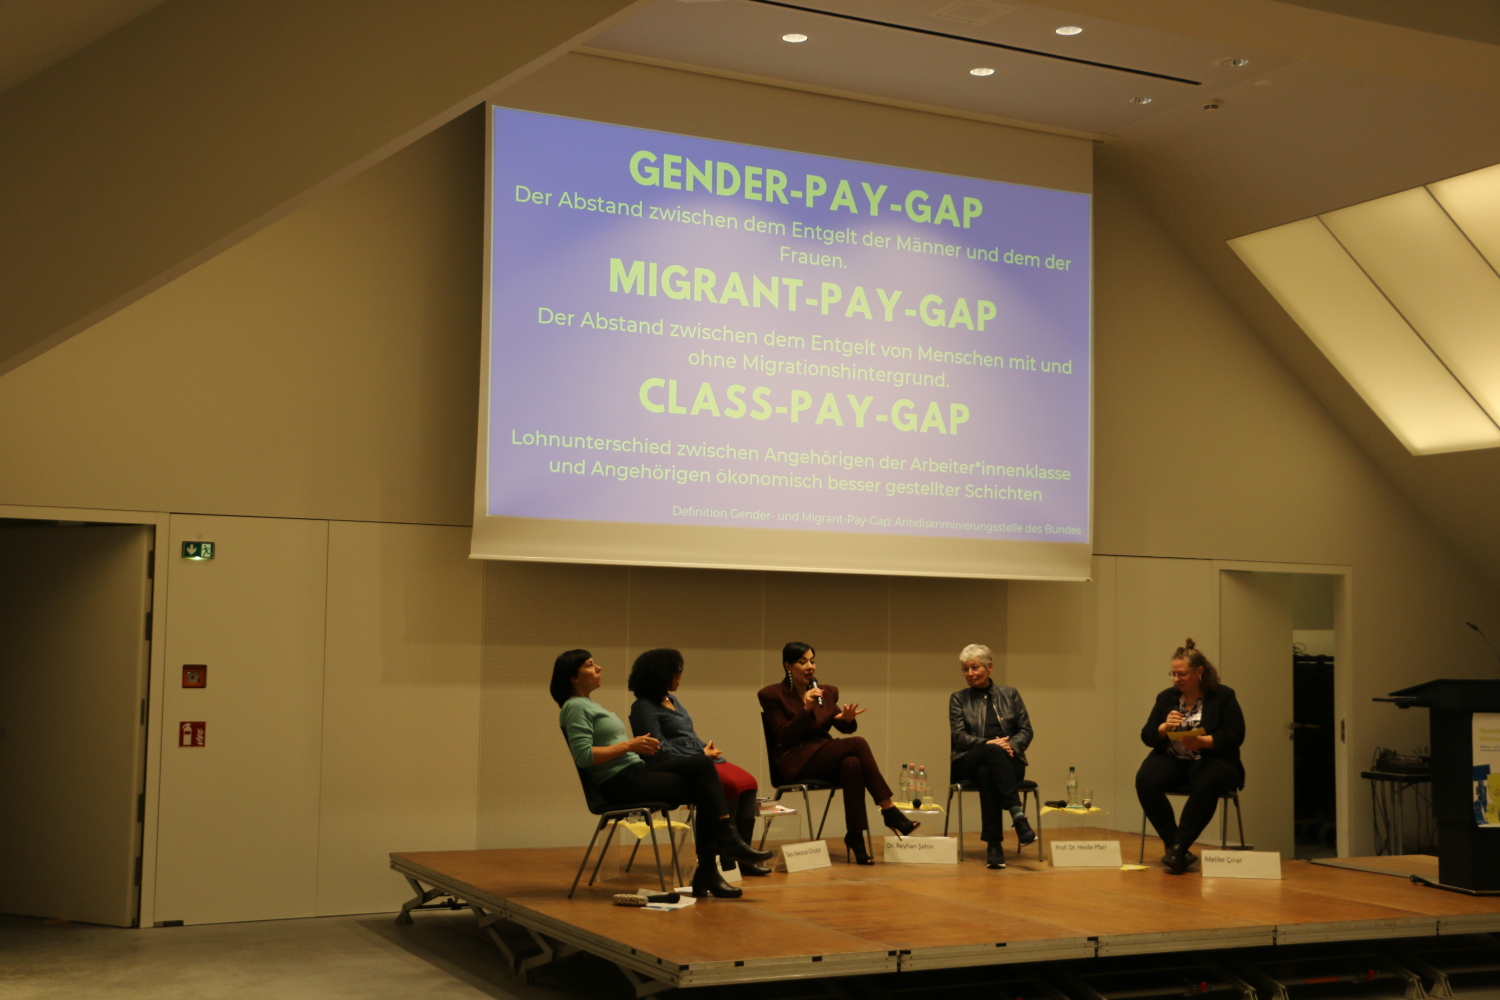 Die Podiumsgäst*innen sitzen auf der Bühne. Dr. Reyhan Şahin spricht ins Mikrofon. Im Hintergrund ist eine Präsentation auf einer Leinwand, auf der die Definitionen von Gender-, Migrant- und Class-Pay-Gap stehen.